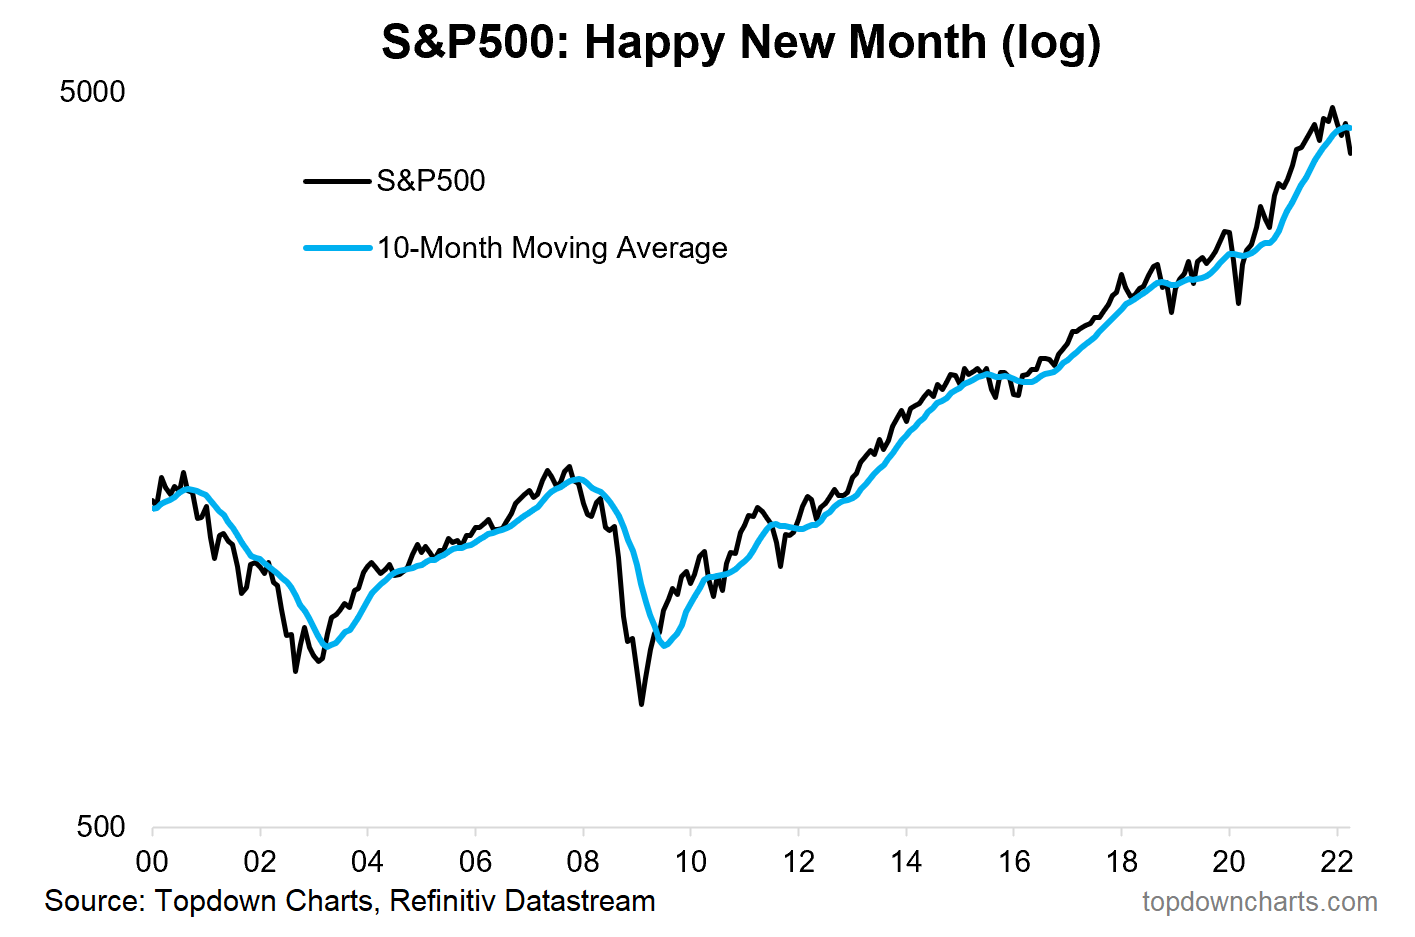 S&P 500: Happy New Month Log